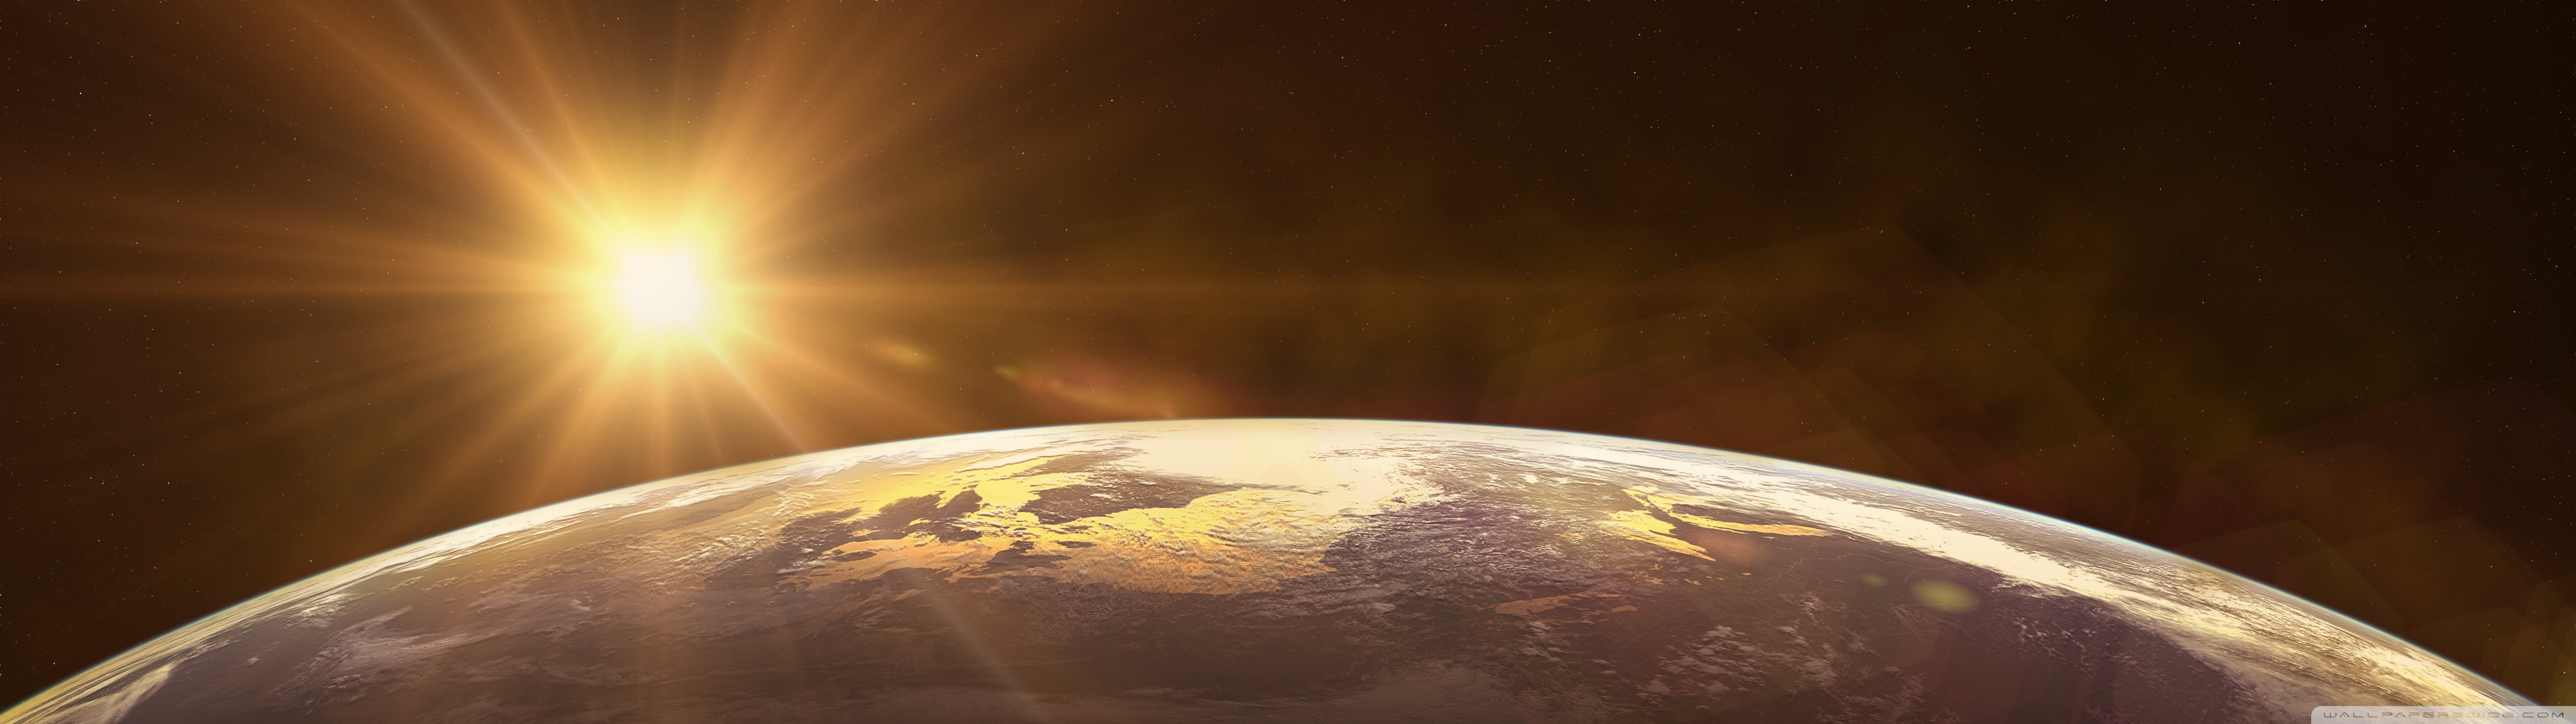 hintergrundbild mit zwei monitoren,atmosphäre,planet,weltraum,erde,himmel